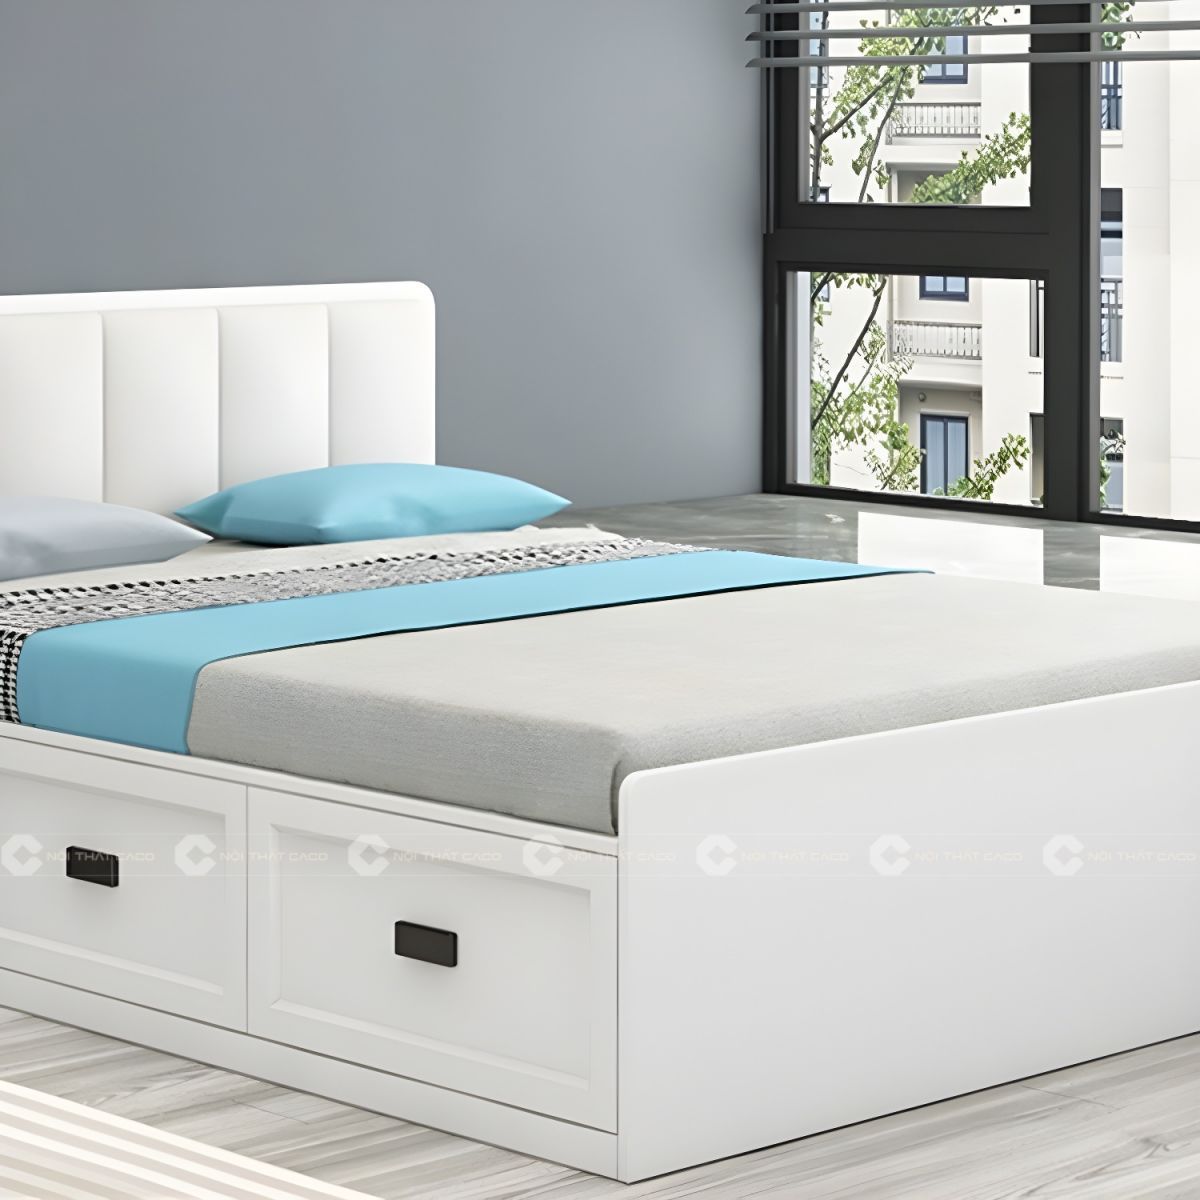 Giường ngủ gỗ công nghiệp màu trắng hiện đại